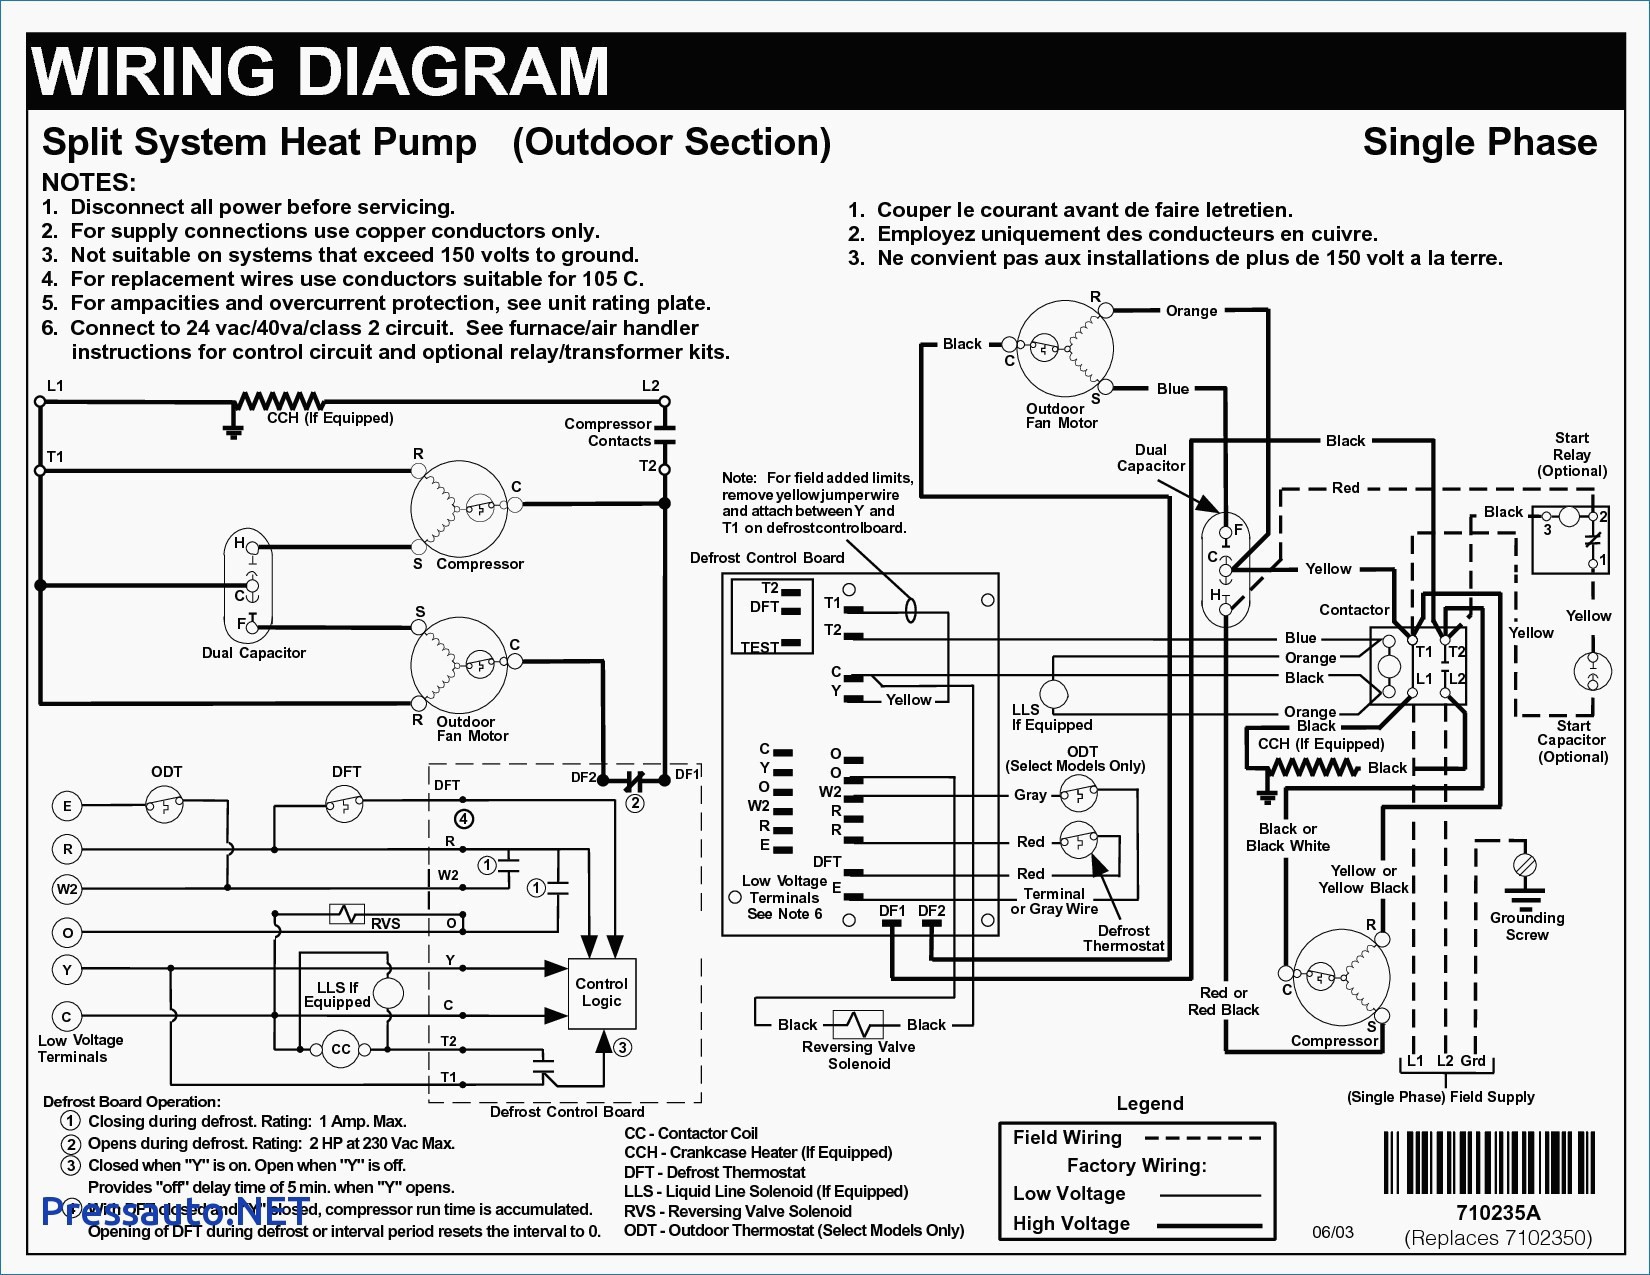 Trane Air Conditioner Wiring Diagram Trane Air Conditioner Troubleshooting Free and Wiring Diagram Of Trane Air Conditioner Wiring Diagram